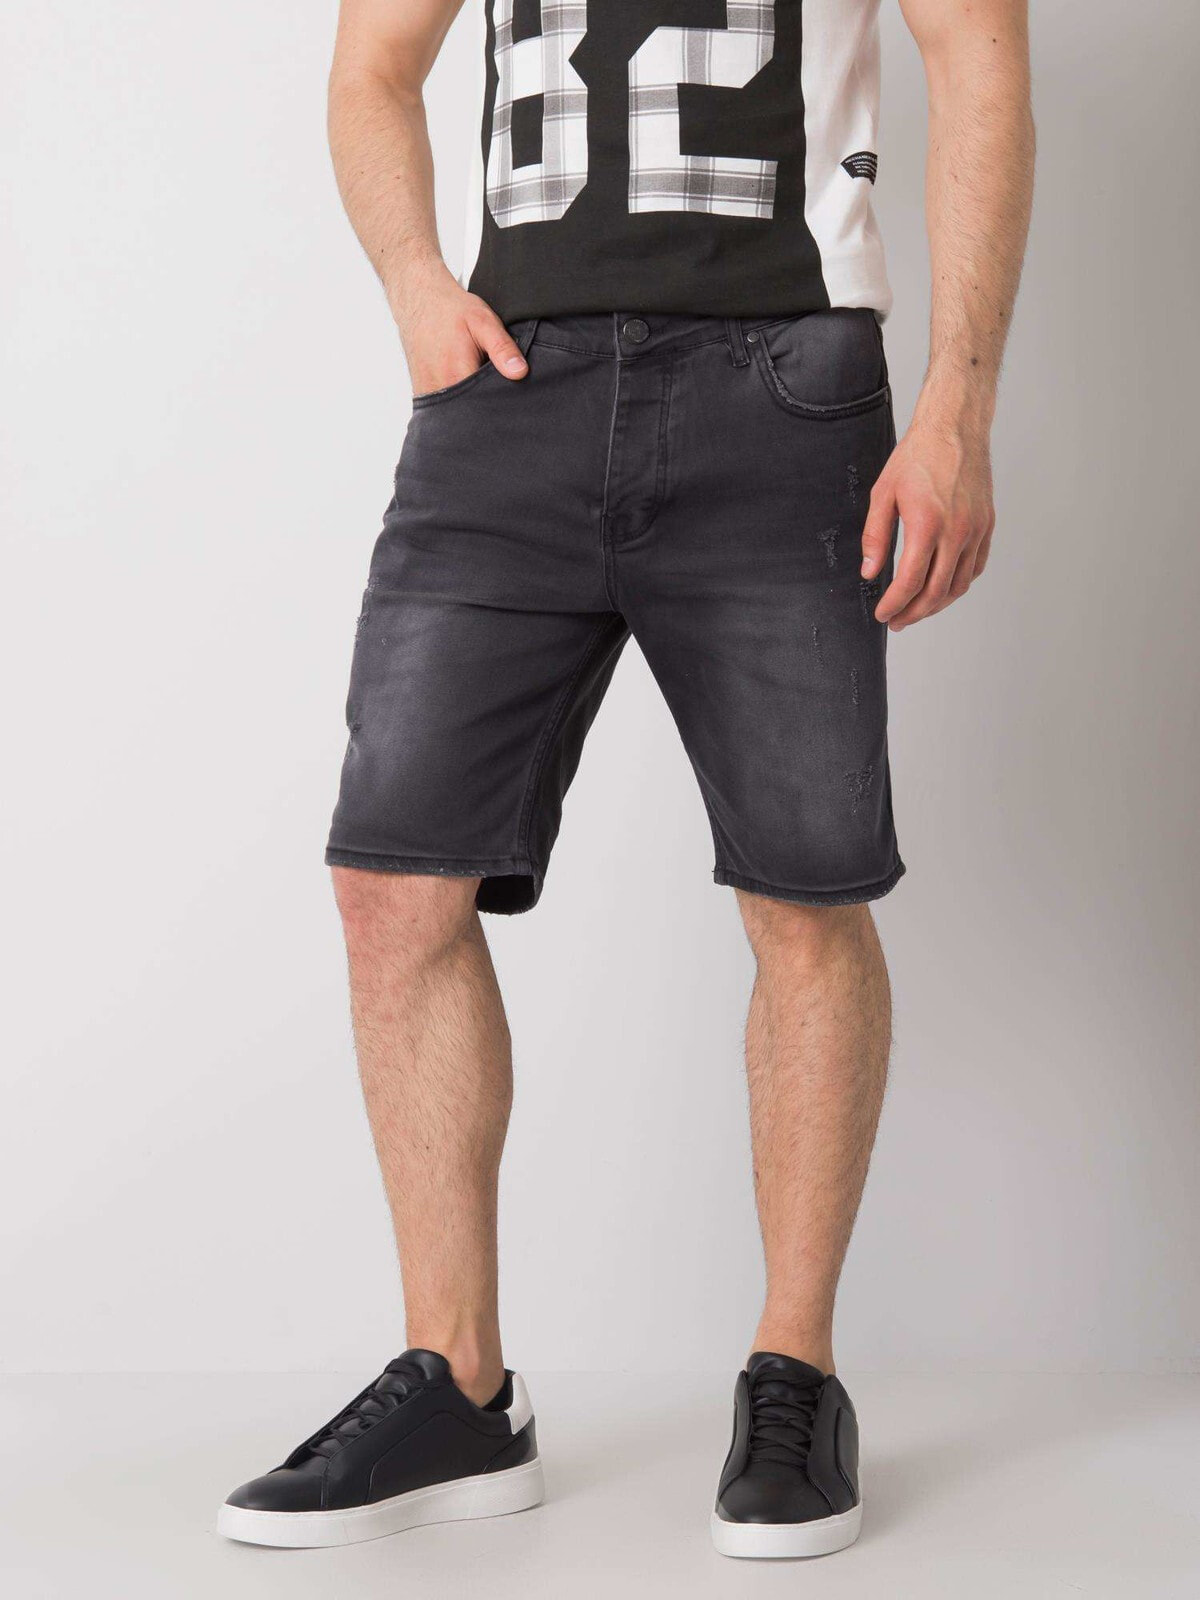 Мужские шорты черные джинсовые длинные FactoryPrice-MH-SN-3003-1.71P-czarny цвет черный размер M — купить недорого сдоставкой, 44713